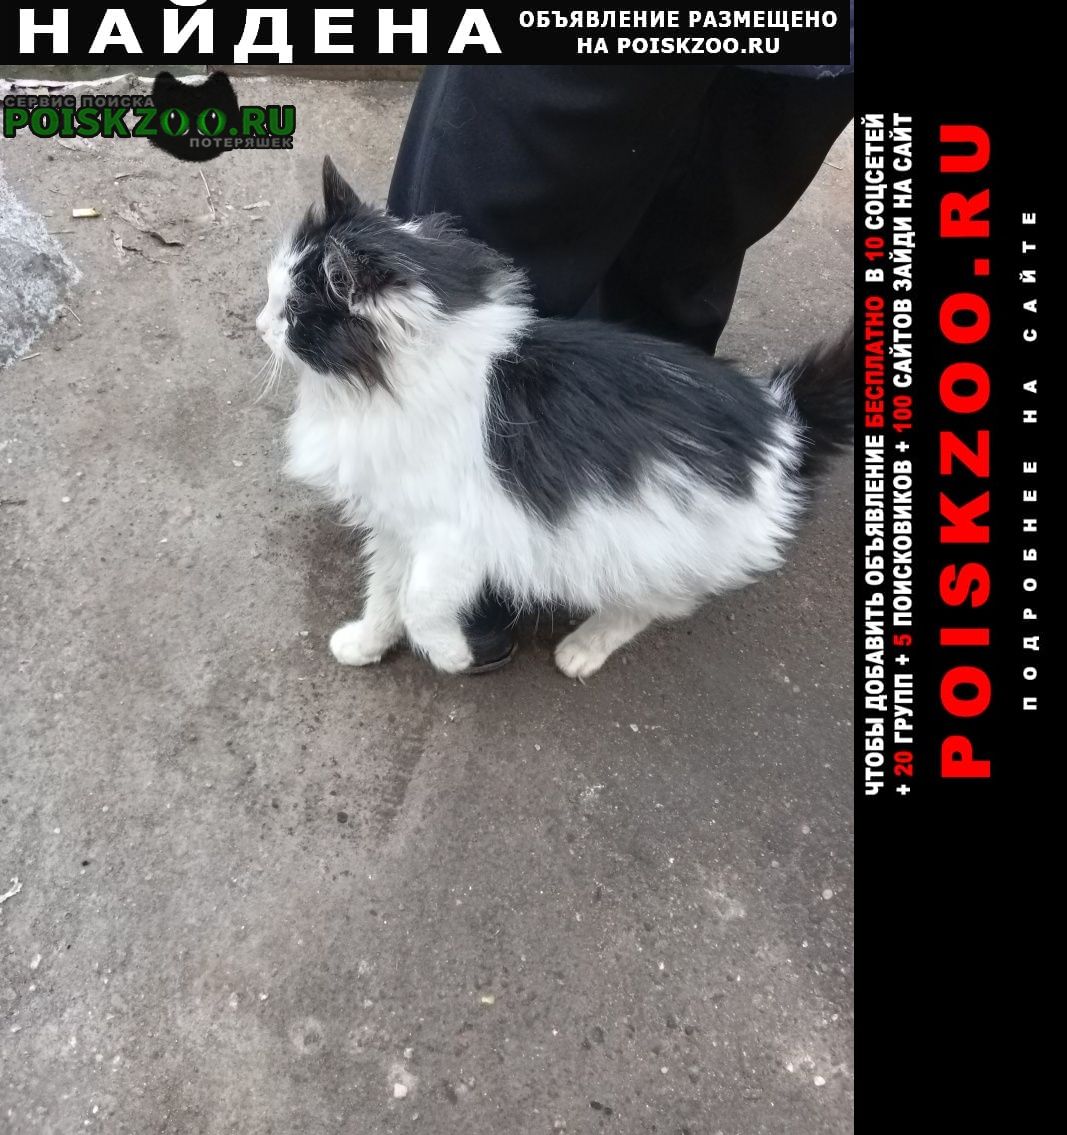 Найдена кошка микрорайон марьино Москва